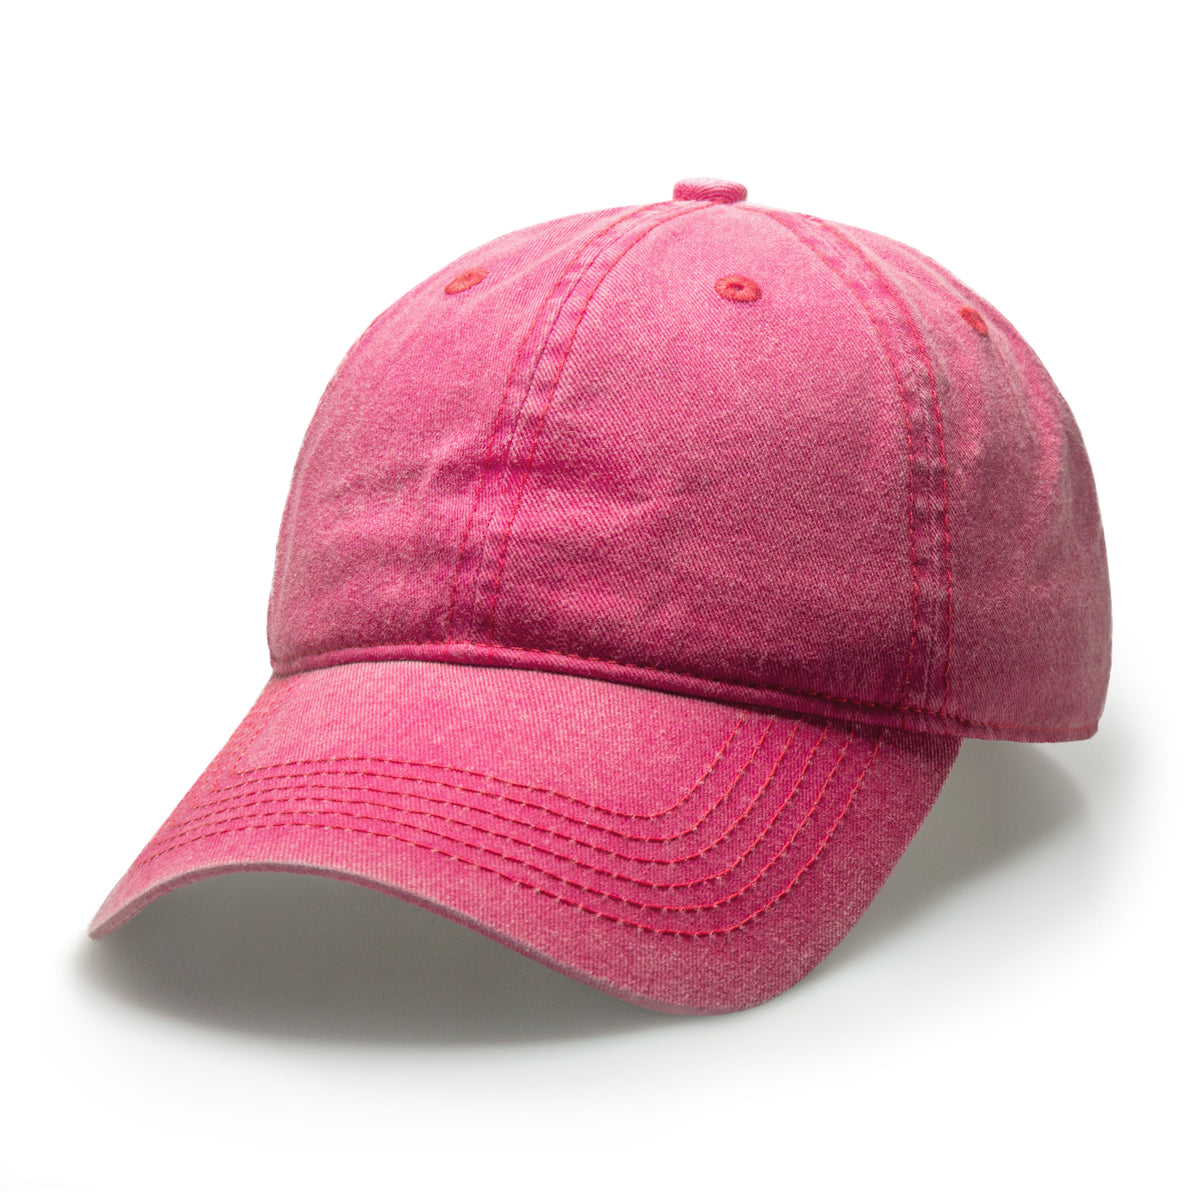 pink vintage baseball cap